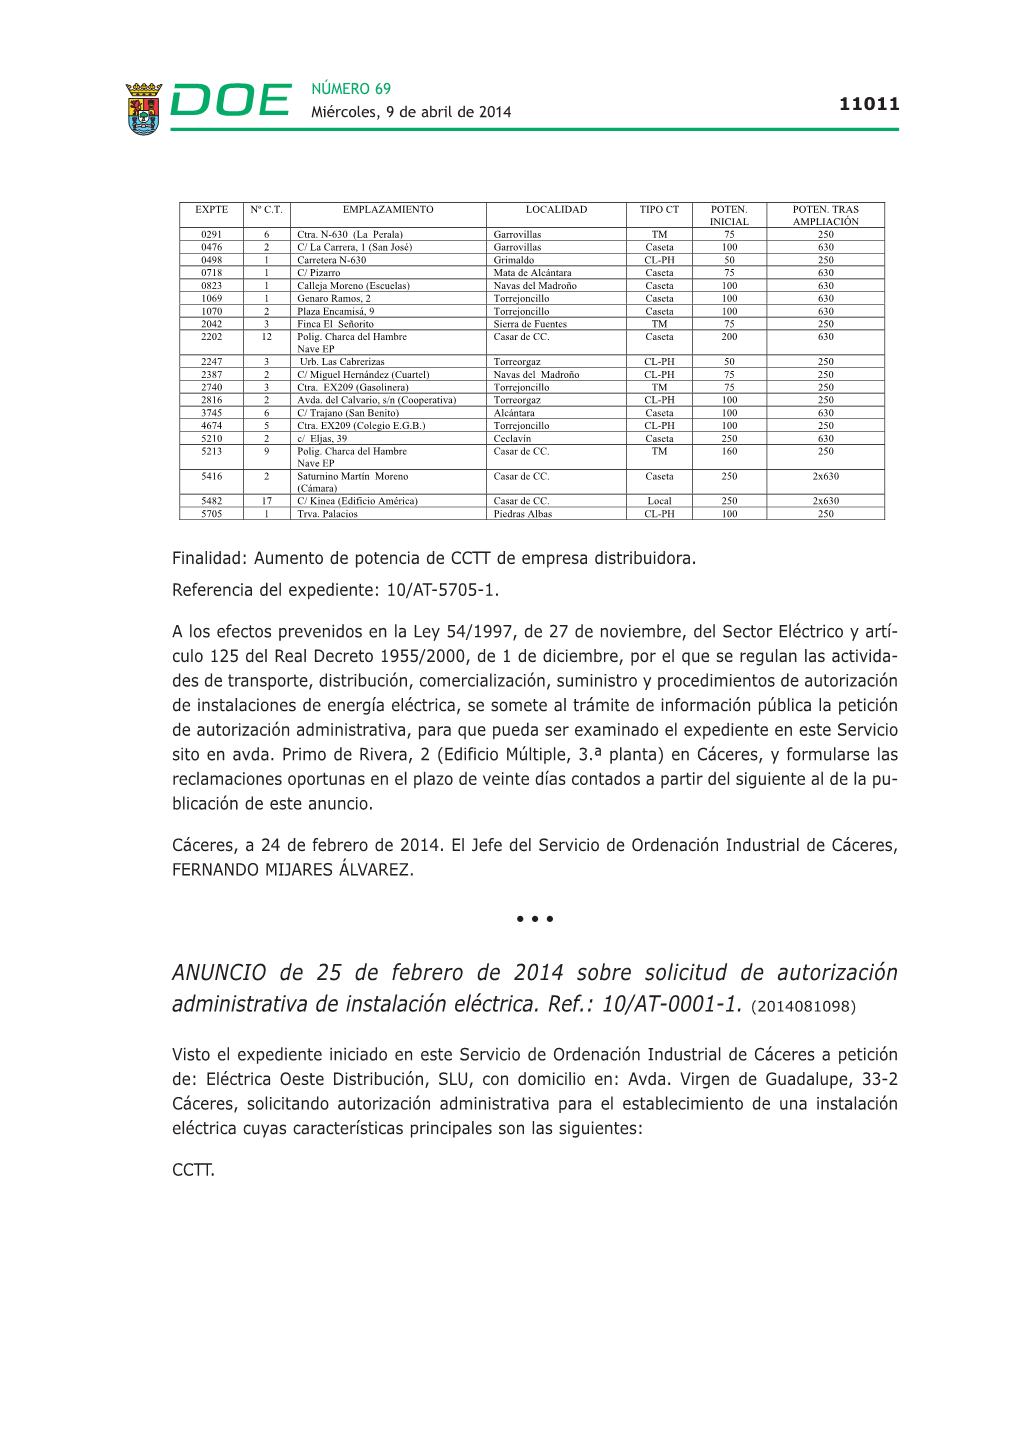 ANUNCIO De 25 De Febrero De 2014 Sobre Solicitud De Autorización Administrativa De Instalación Eléctrica. Ref.: 10/AT-0001-1